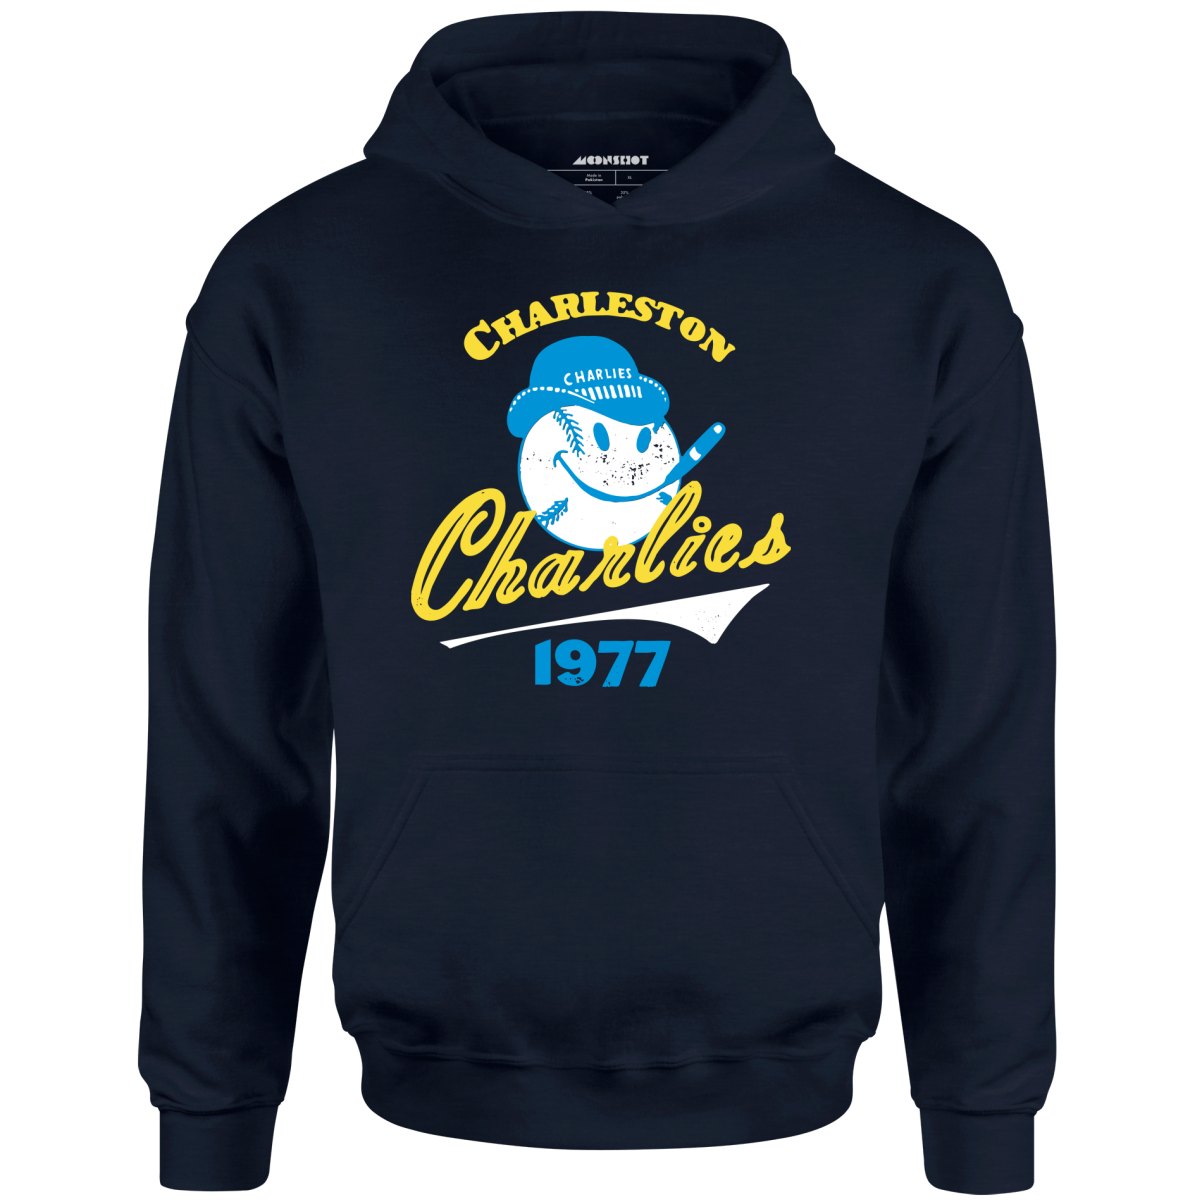 Charleston Charlies - West Virginia - Vintage Defunct Baseball Teams - Unisex Hoodie